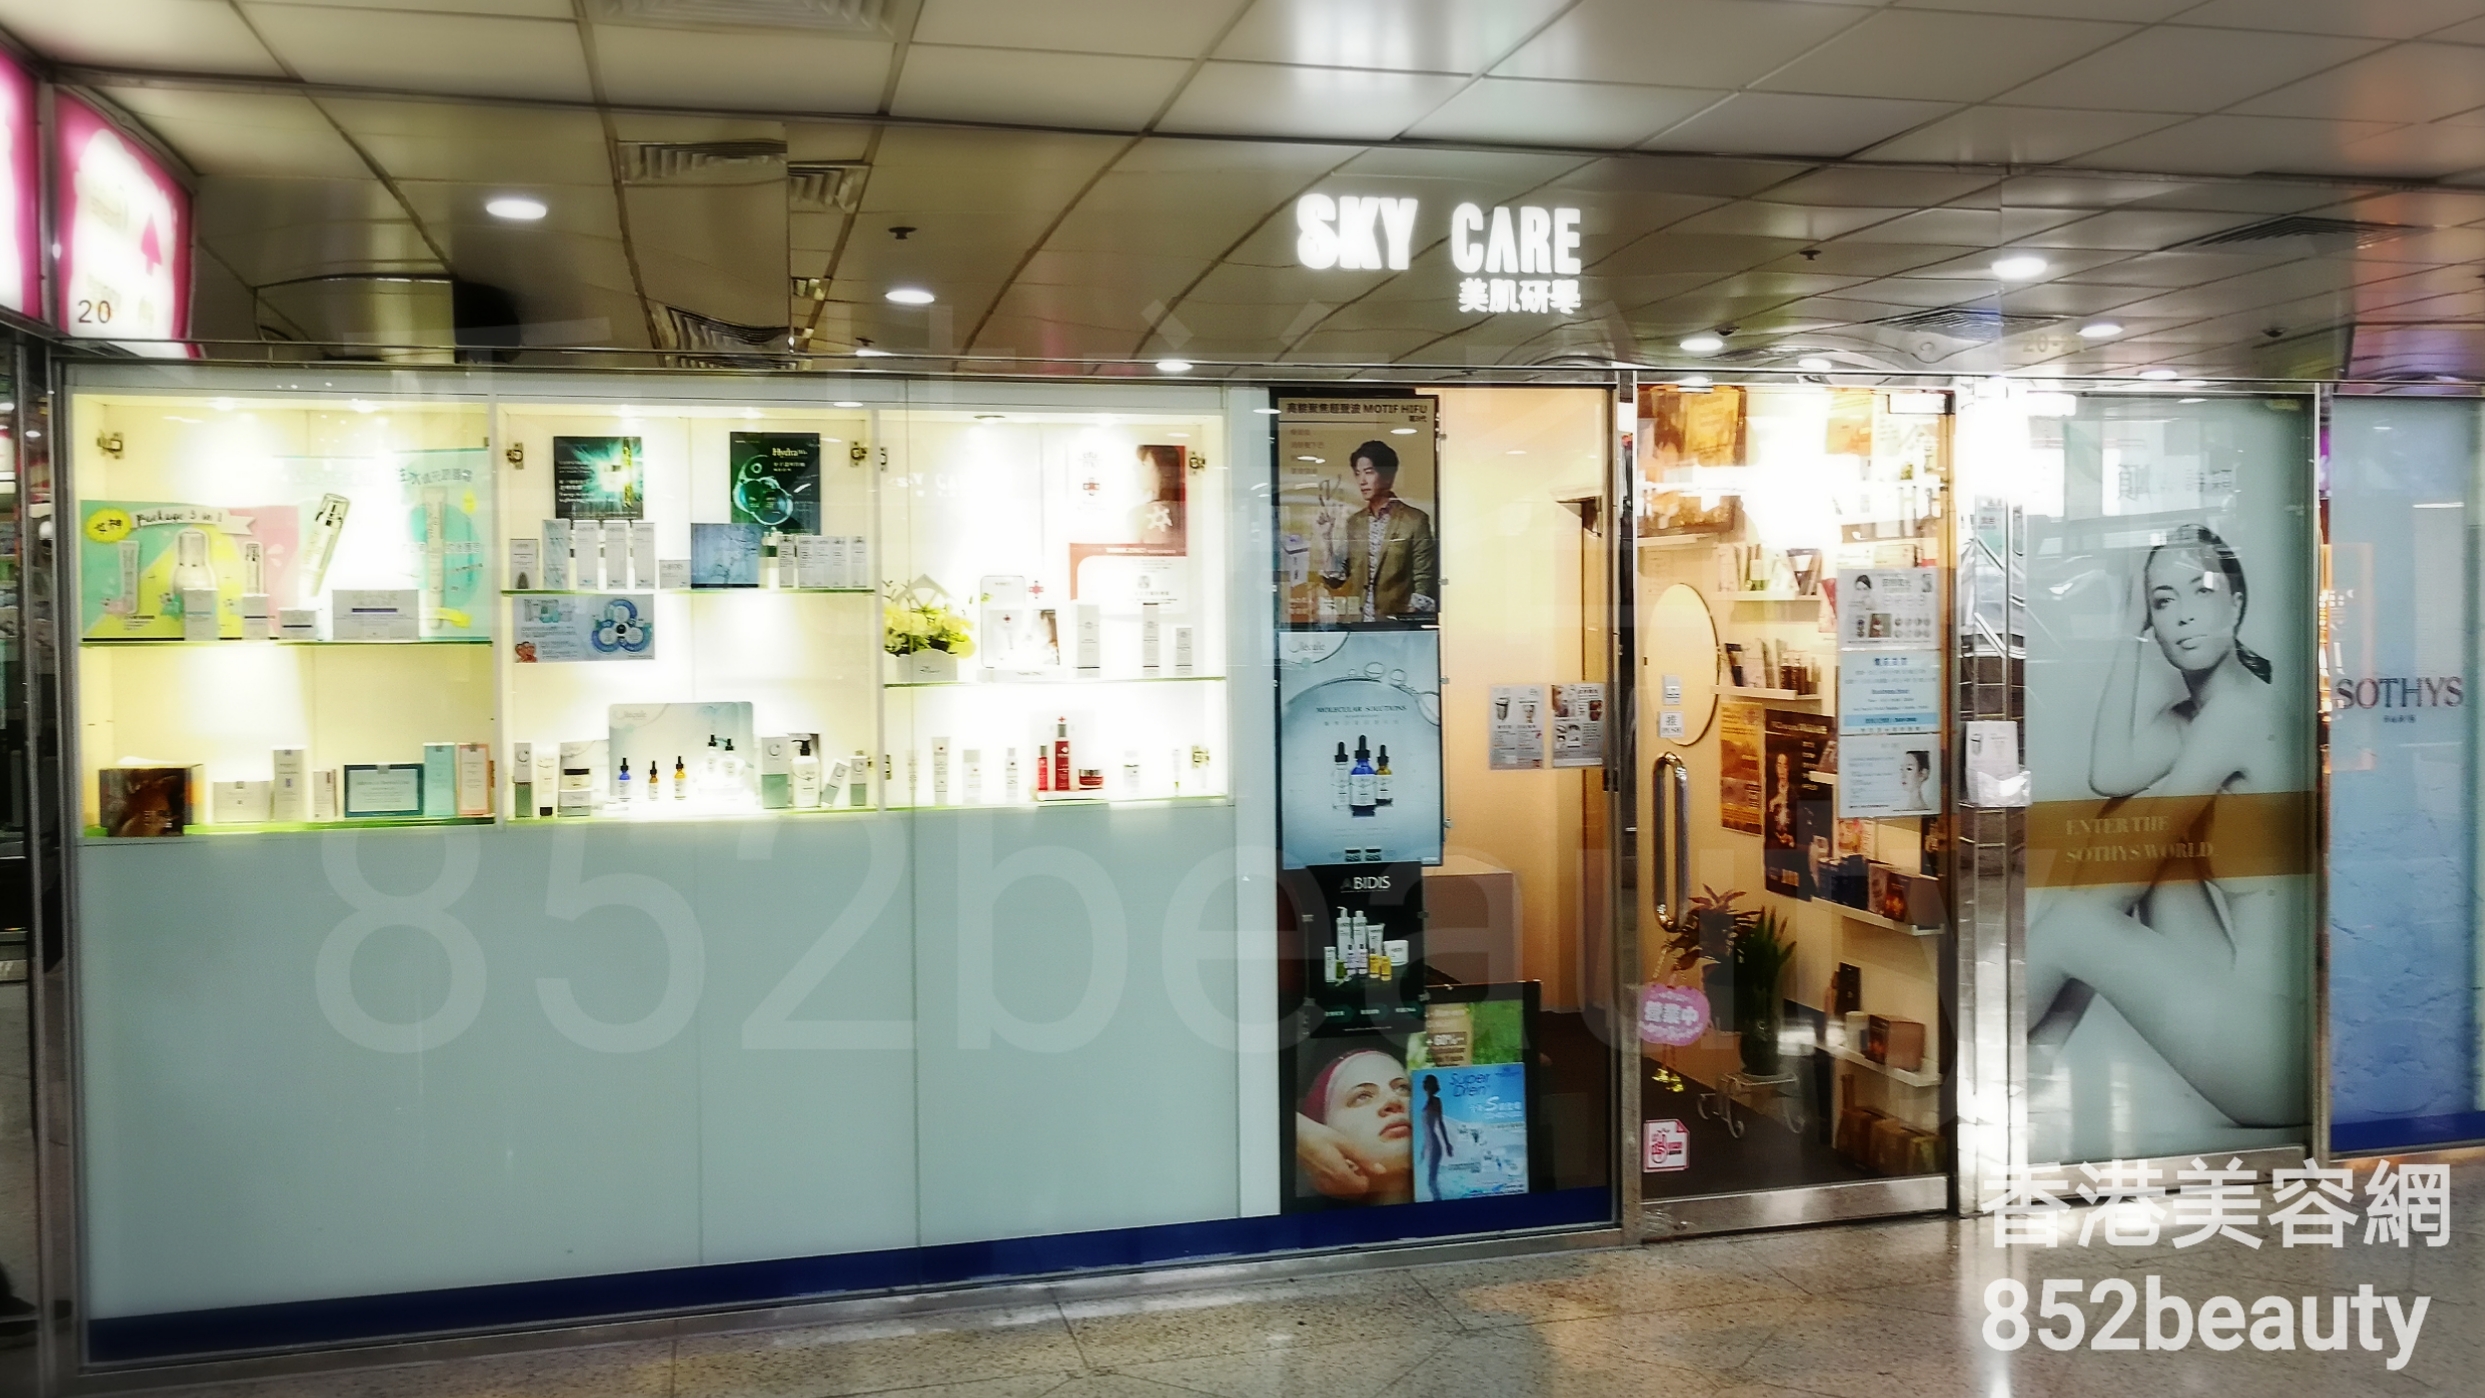 香港美容網 Hong Kong Beauty Salon 美容院 / 美容師: SKY CARE 美肌研學 (上水名都店)